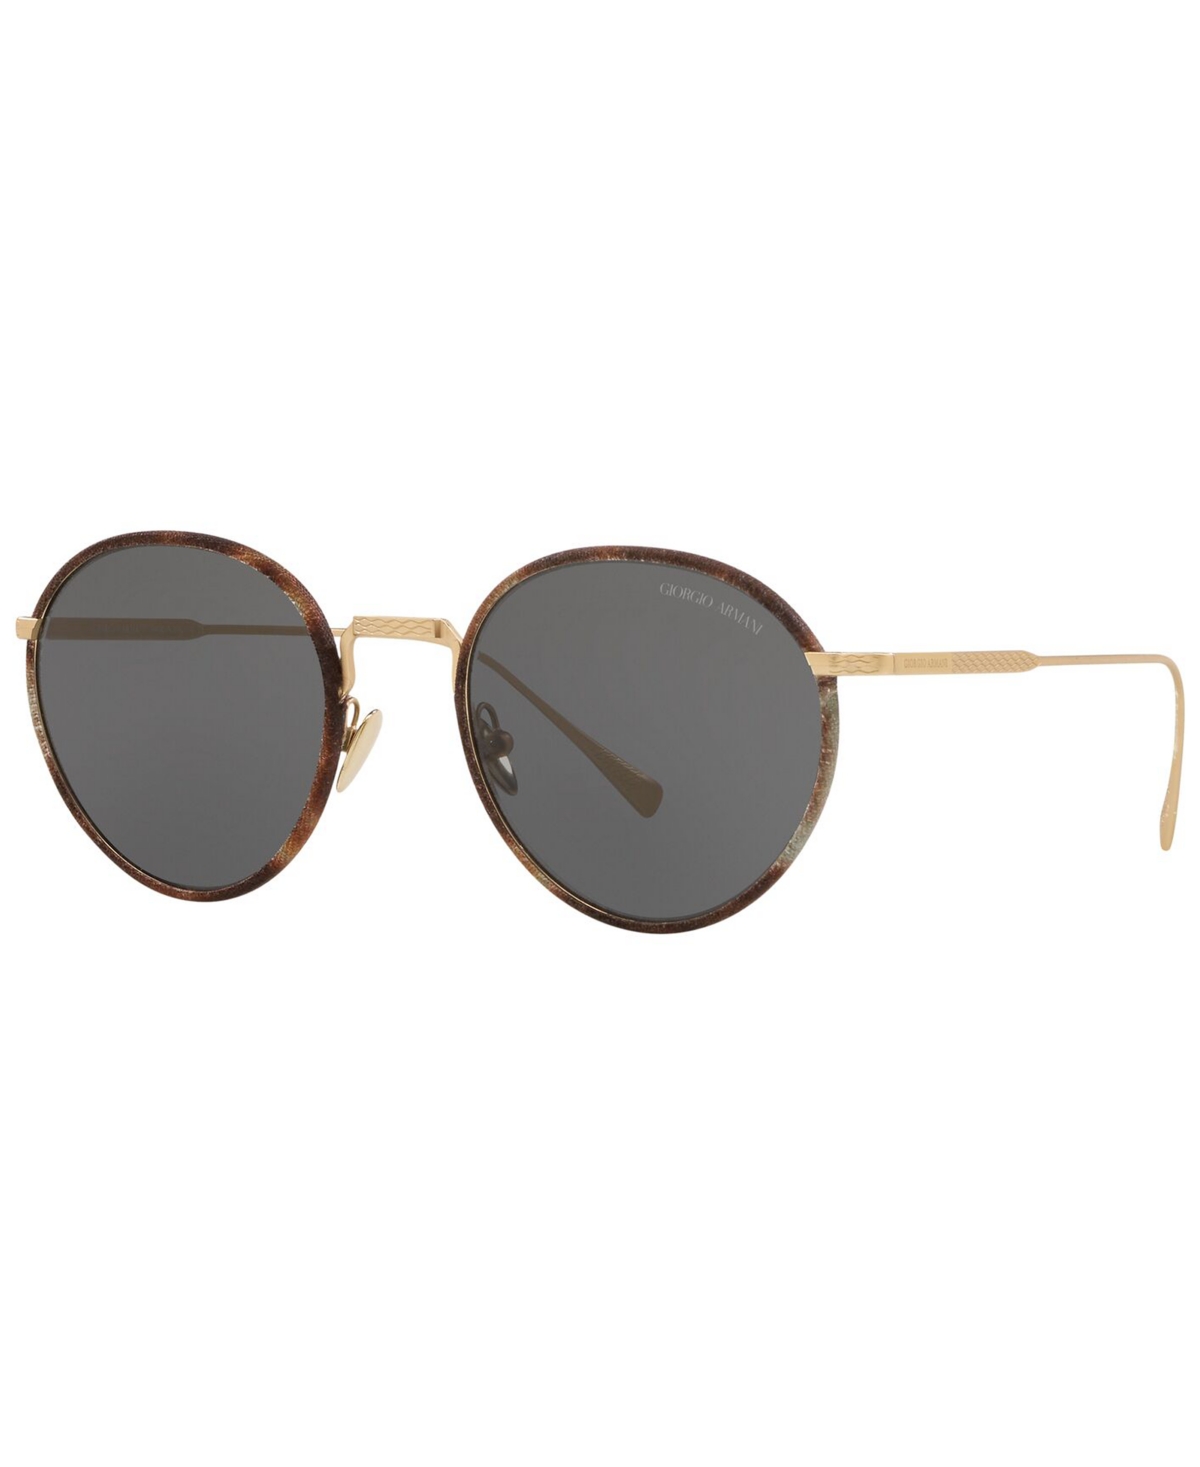 Giorgio Armani Men's Sunglasses In Matte Pale Gold,brown Gradient